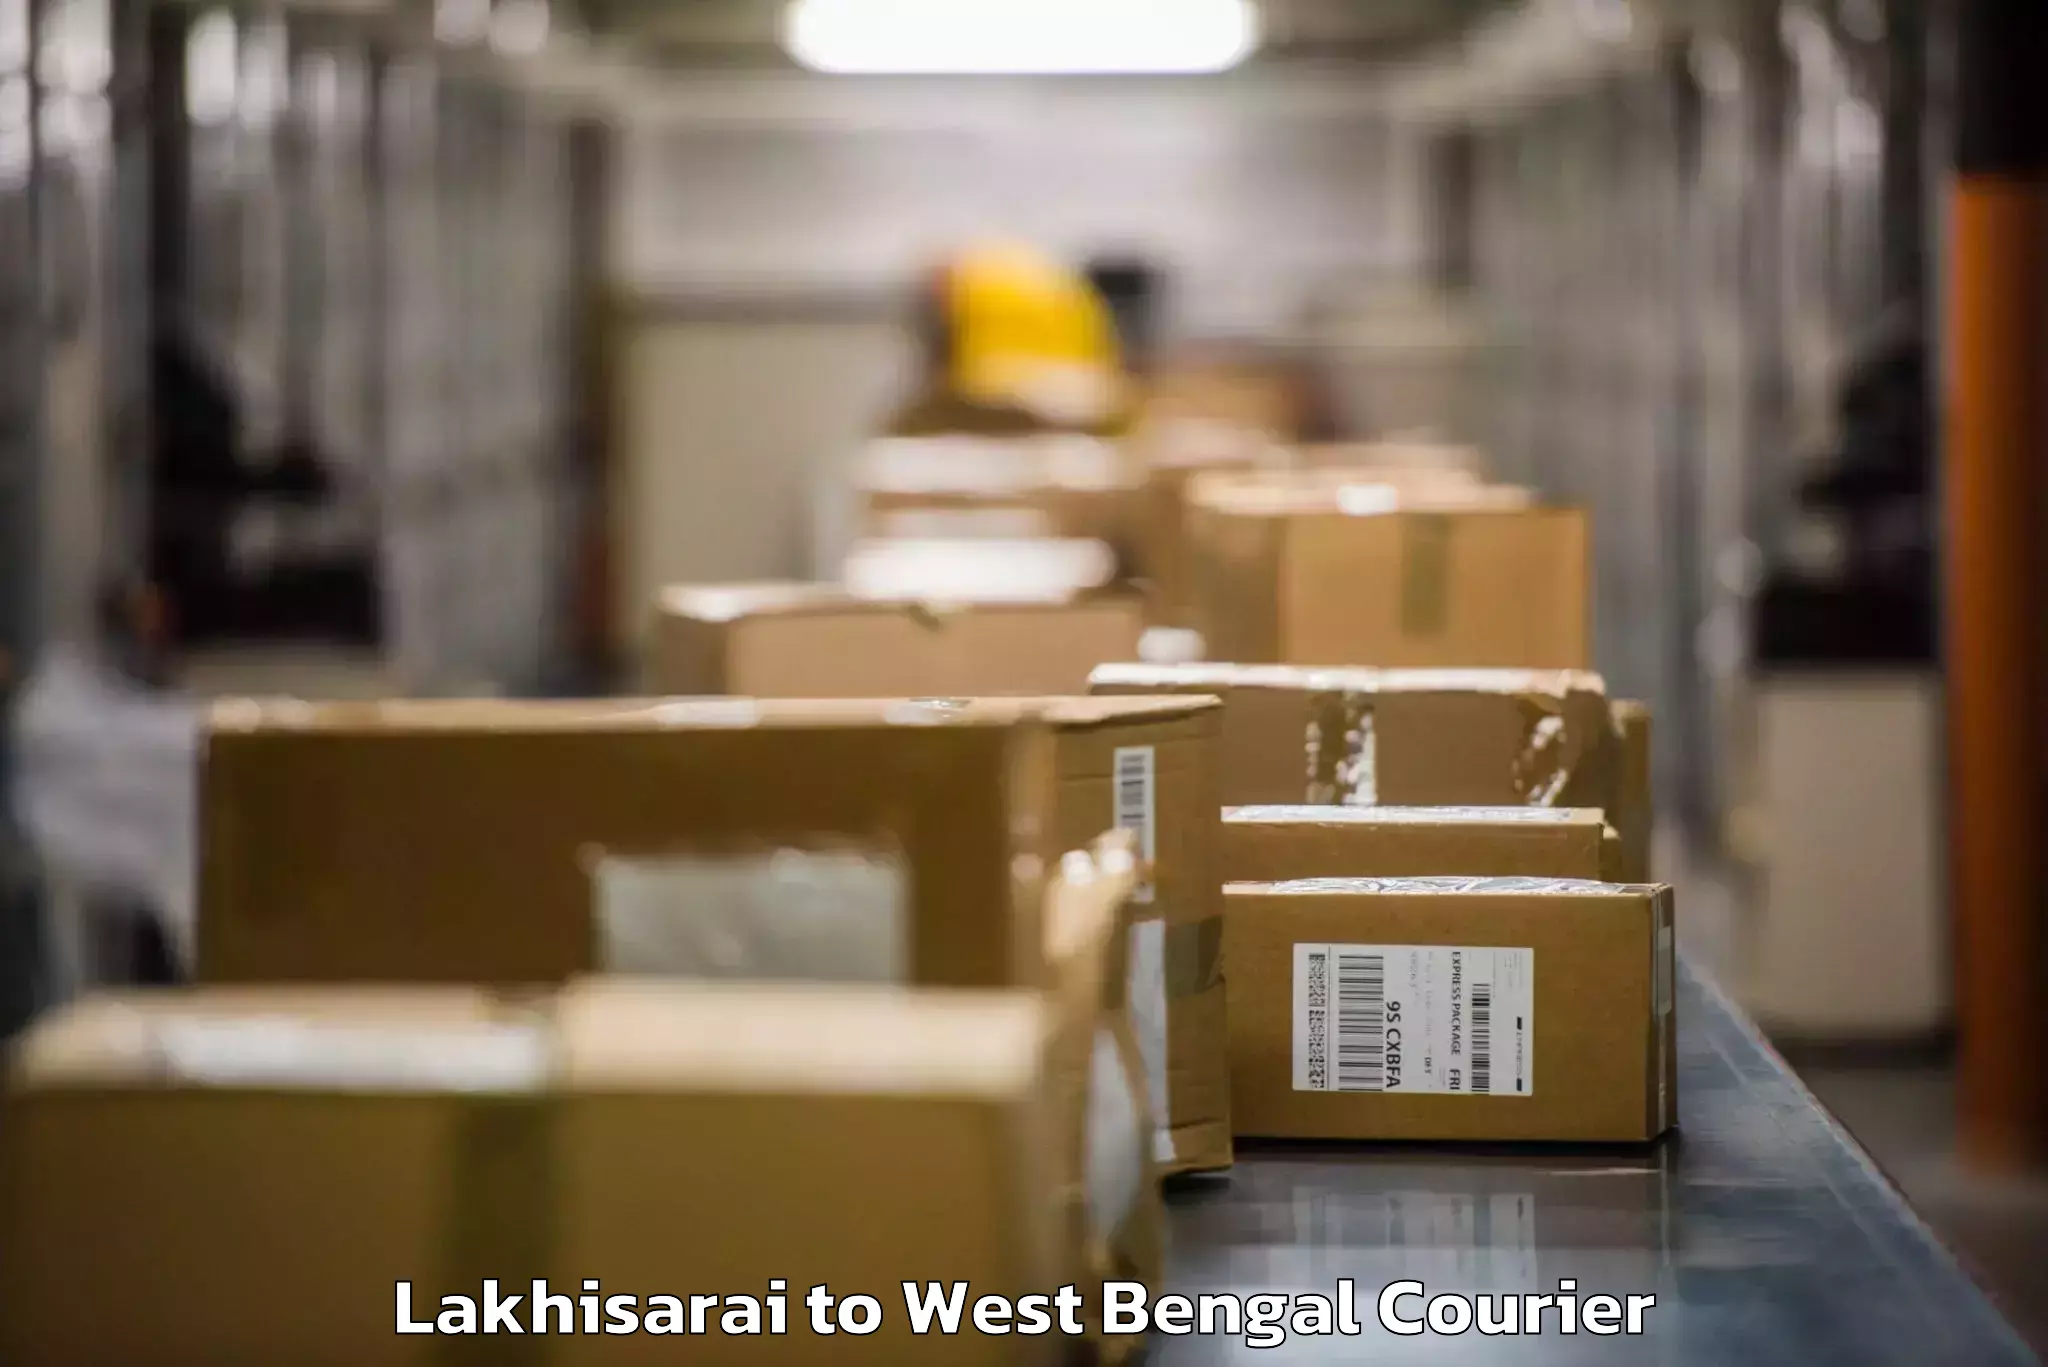 Luggage delivery network Lakhisarai to Hingalganj